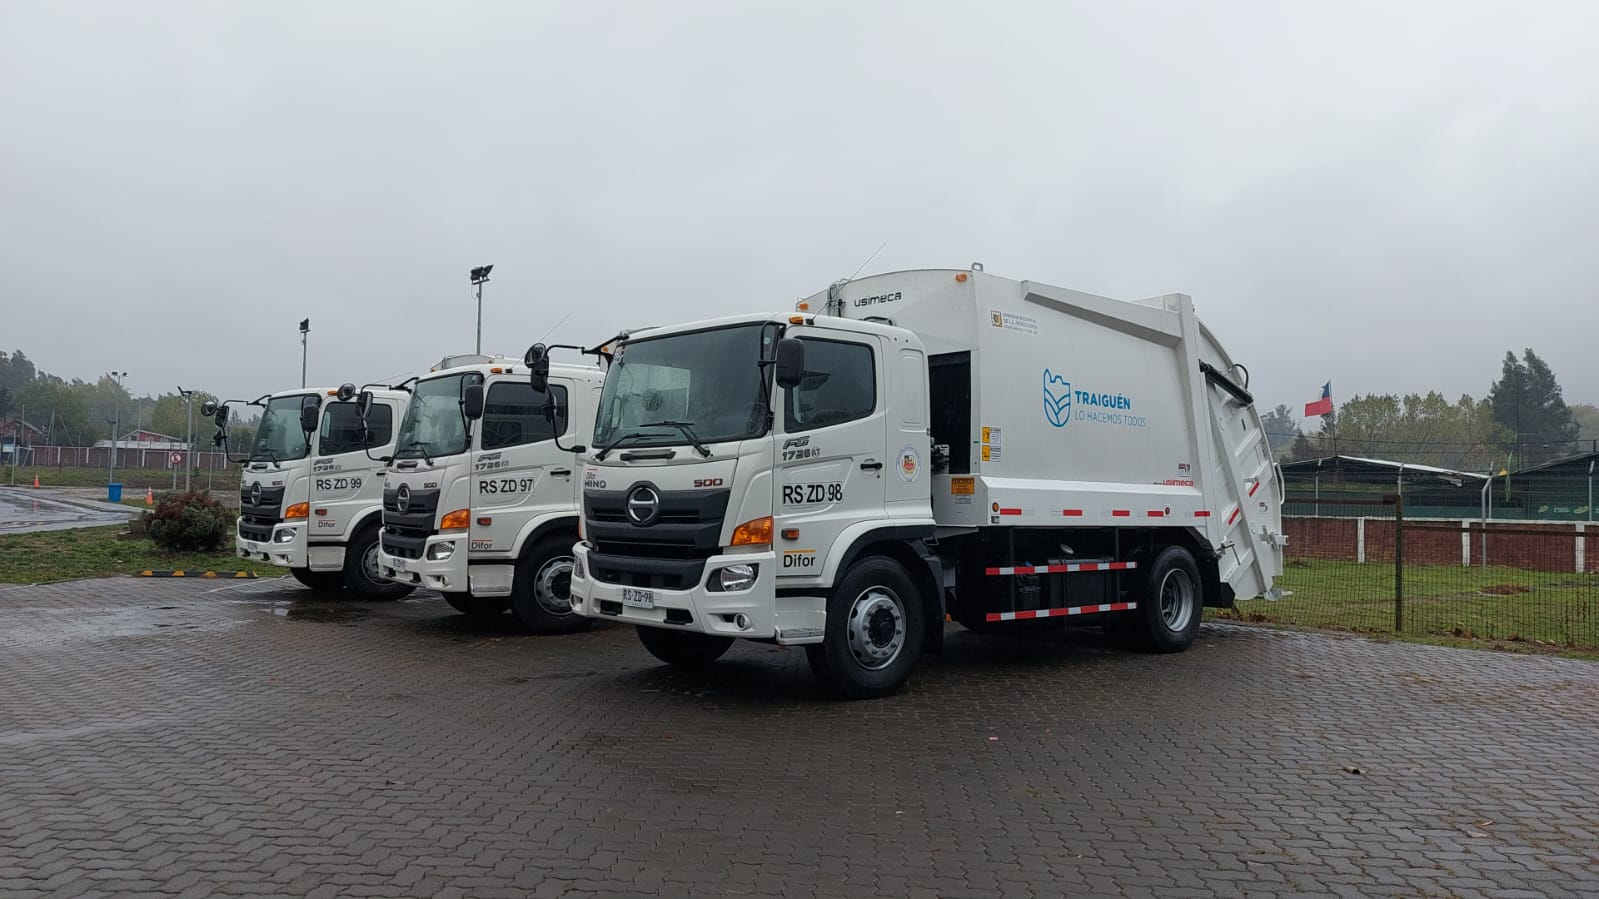  Gobernador regional de La Araucanía entrega camiones recolectores de residuos sólidos al municipio de Traiguén 